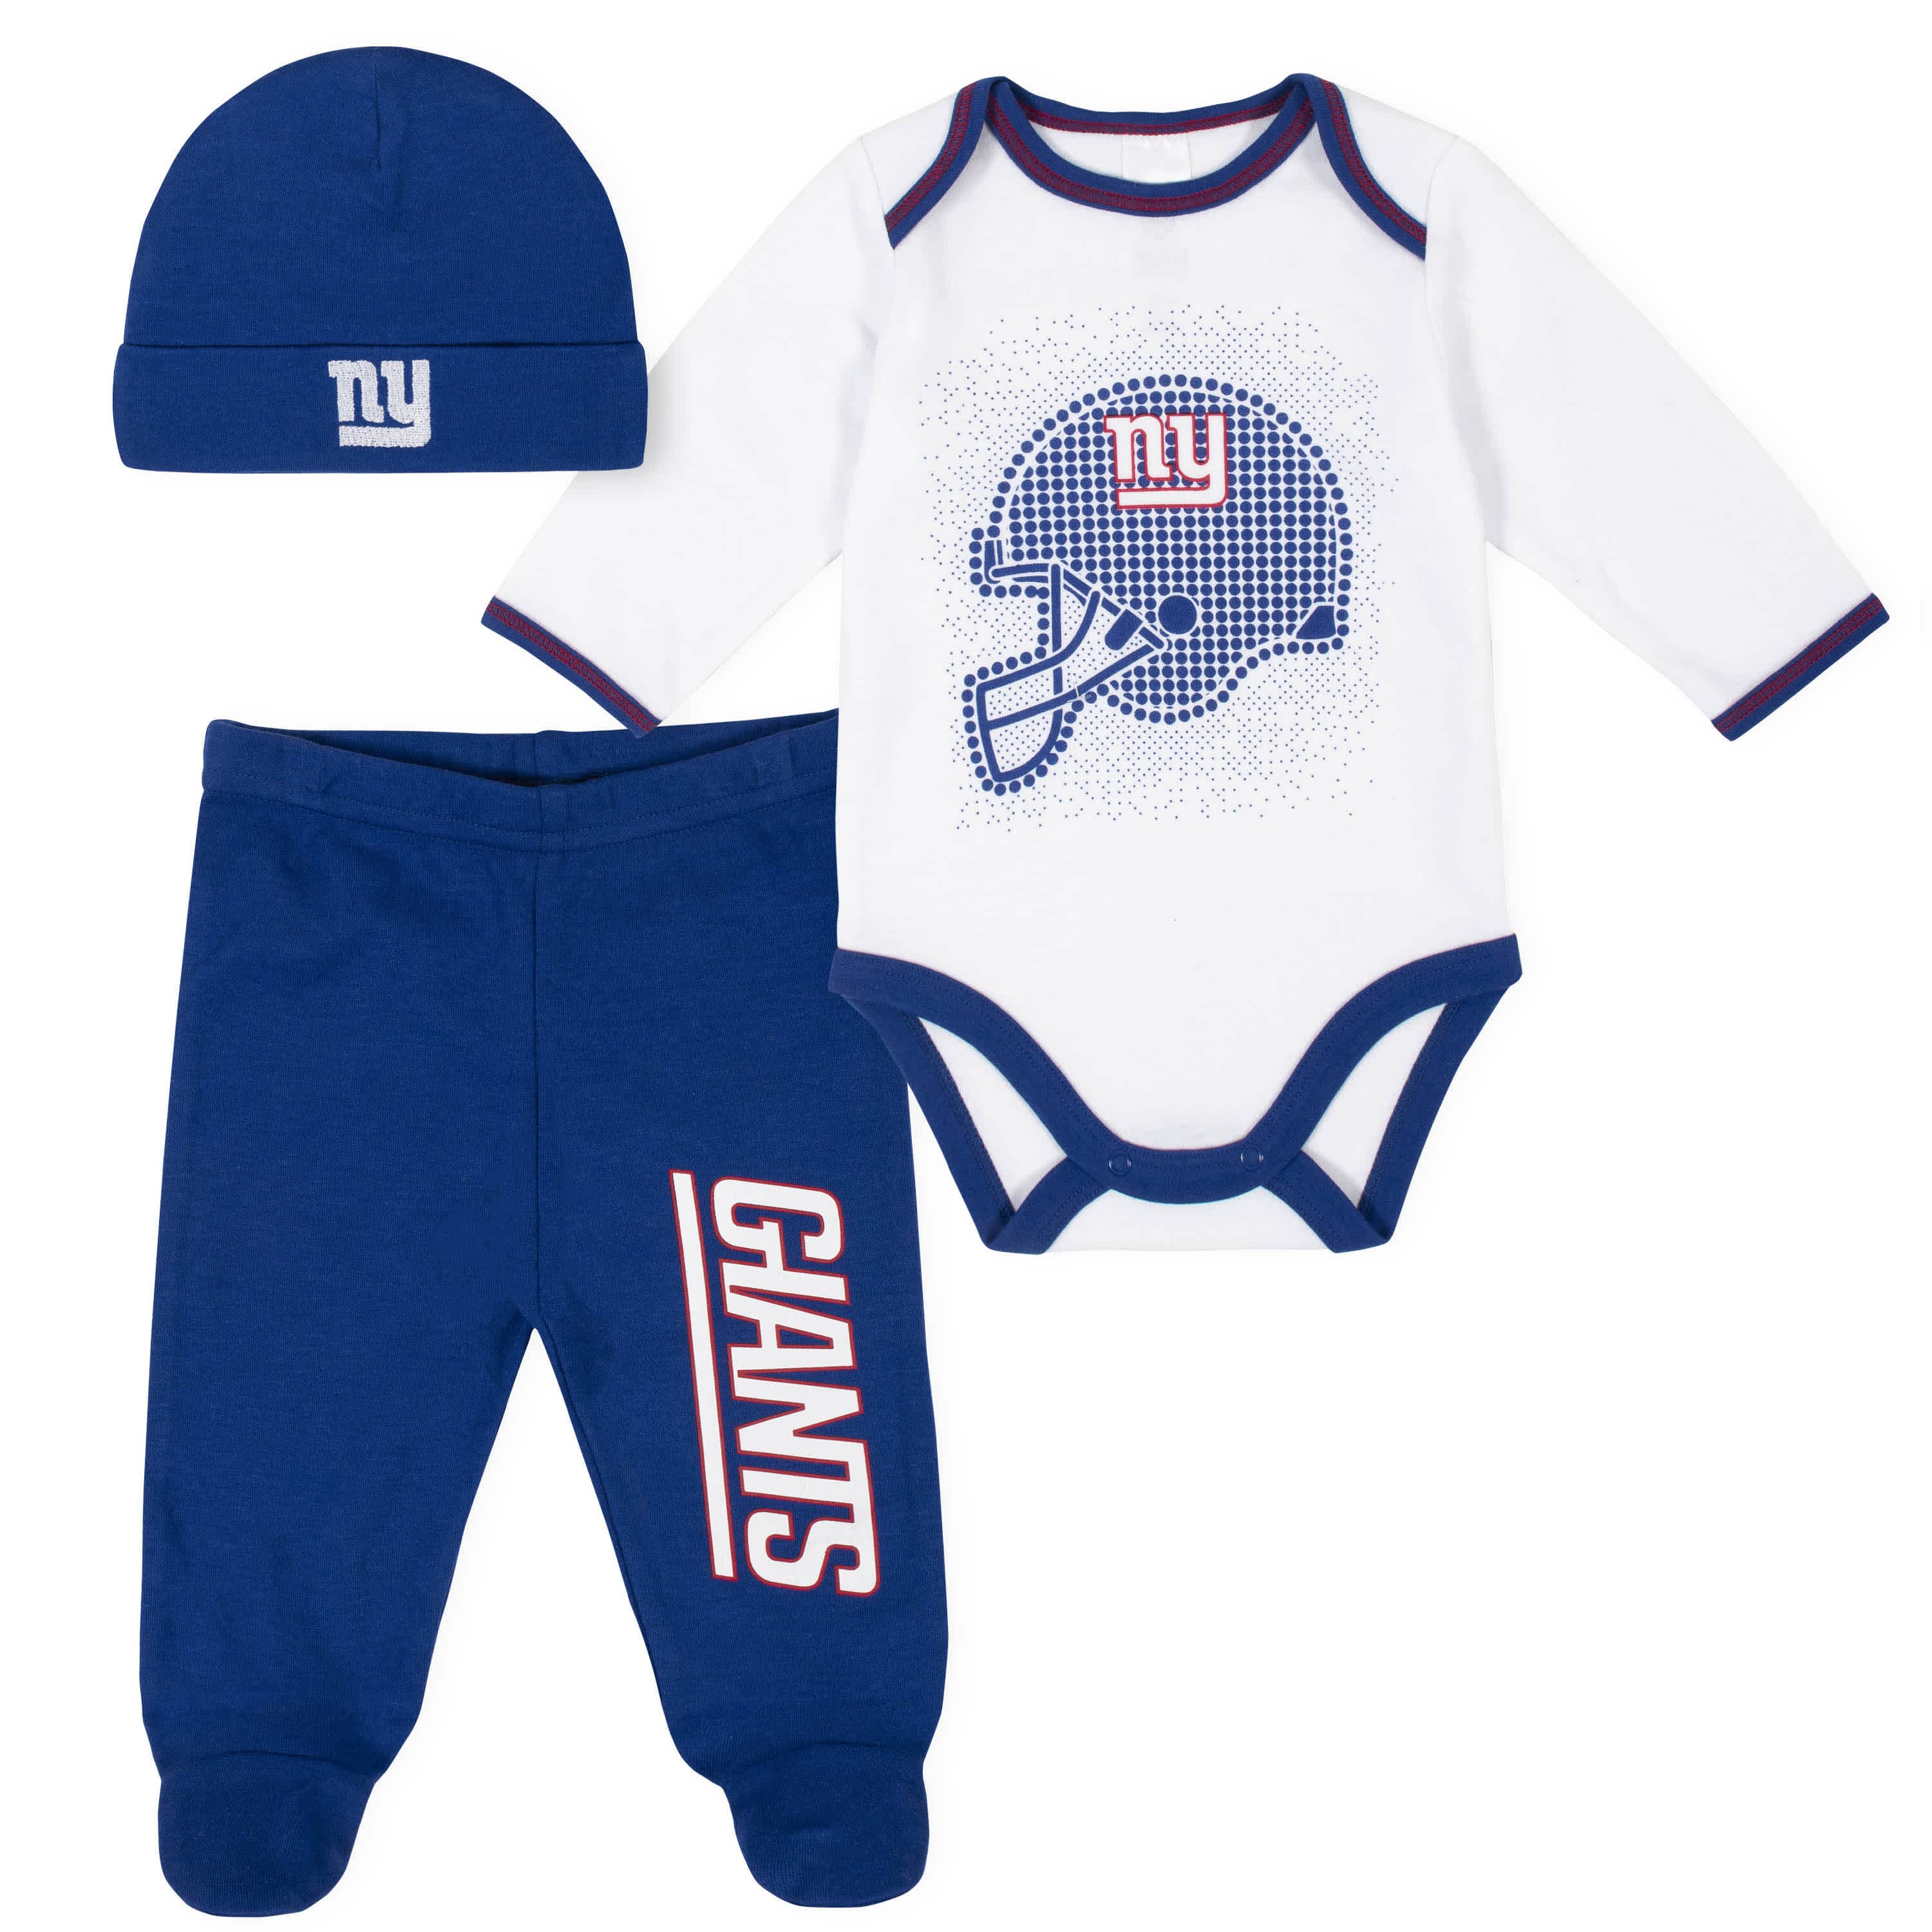 NFL Infant Boys’ Sleep & Play - New York Giants